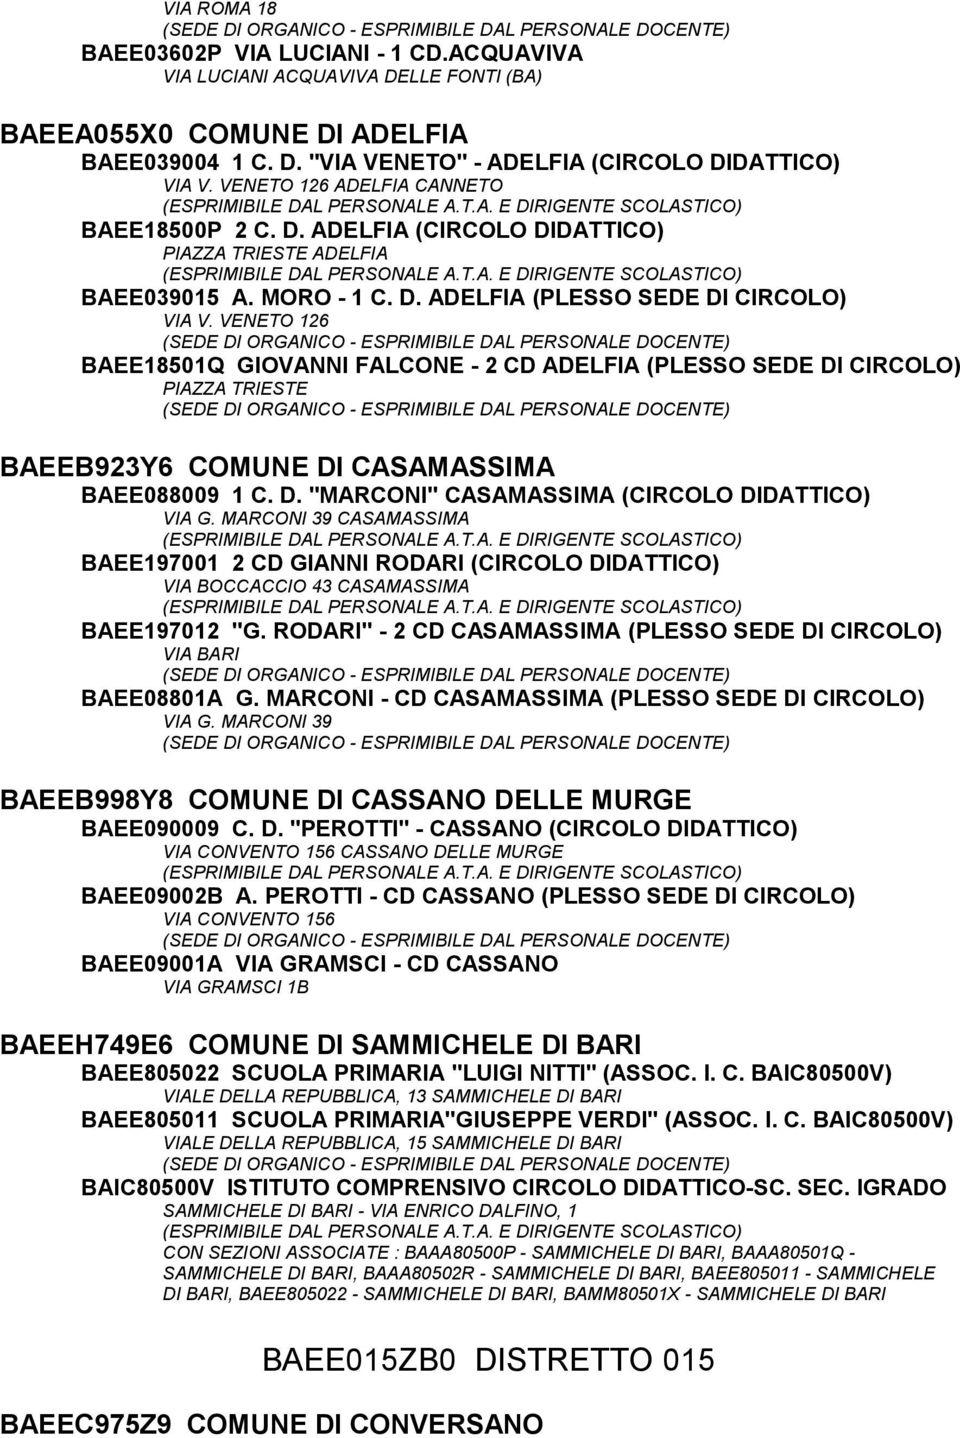 VENETO 126 BAEE18501Q GIOVANNI FALCONE - 2 CD ADELFIA (PLESSO SEDE DI CIRCOLO) PIAZZA TRIESTE BAEEB923Y6 COMUNE DI CASAMASSIMA BAEE088009 1 C. D. "MARCONI" CASAMASSIMA (CIRCOLO DIDATTICO) VIA G.